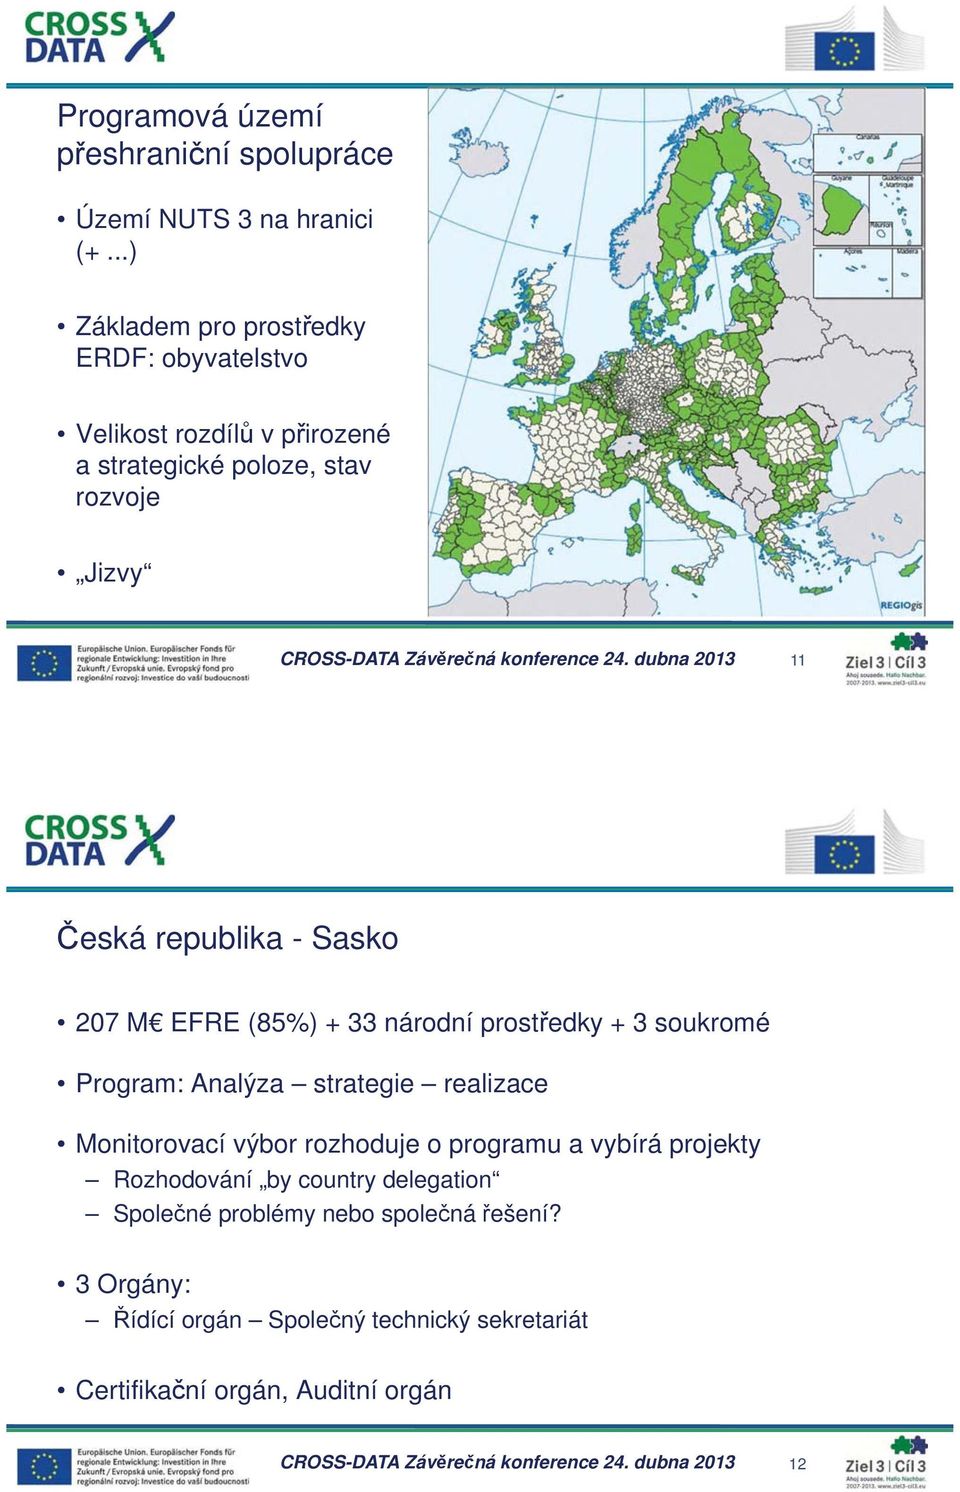 dubna 2013 11 eská republika - Sasko 207 M EFRE (85%) + 33 národní prost edky + 3 soukromé Program: Analýza strategie realizace Monitorovací výbor